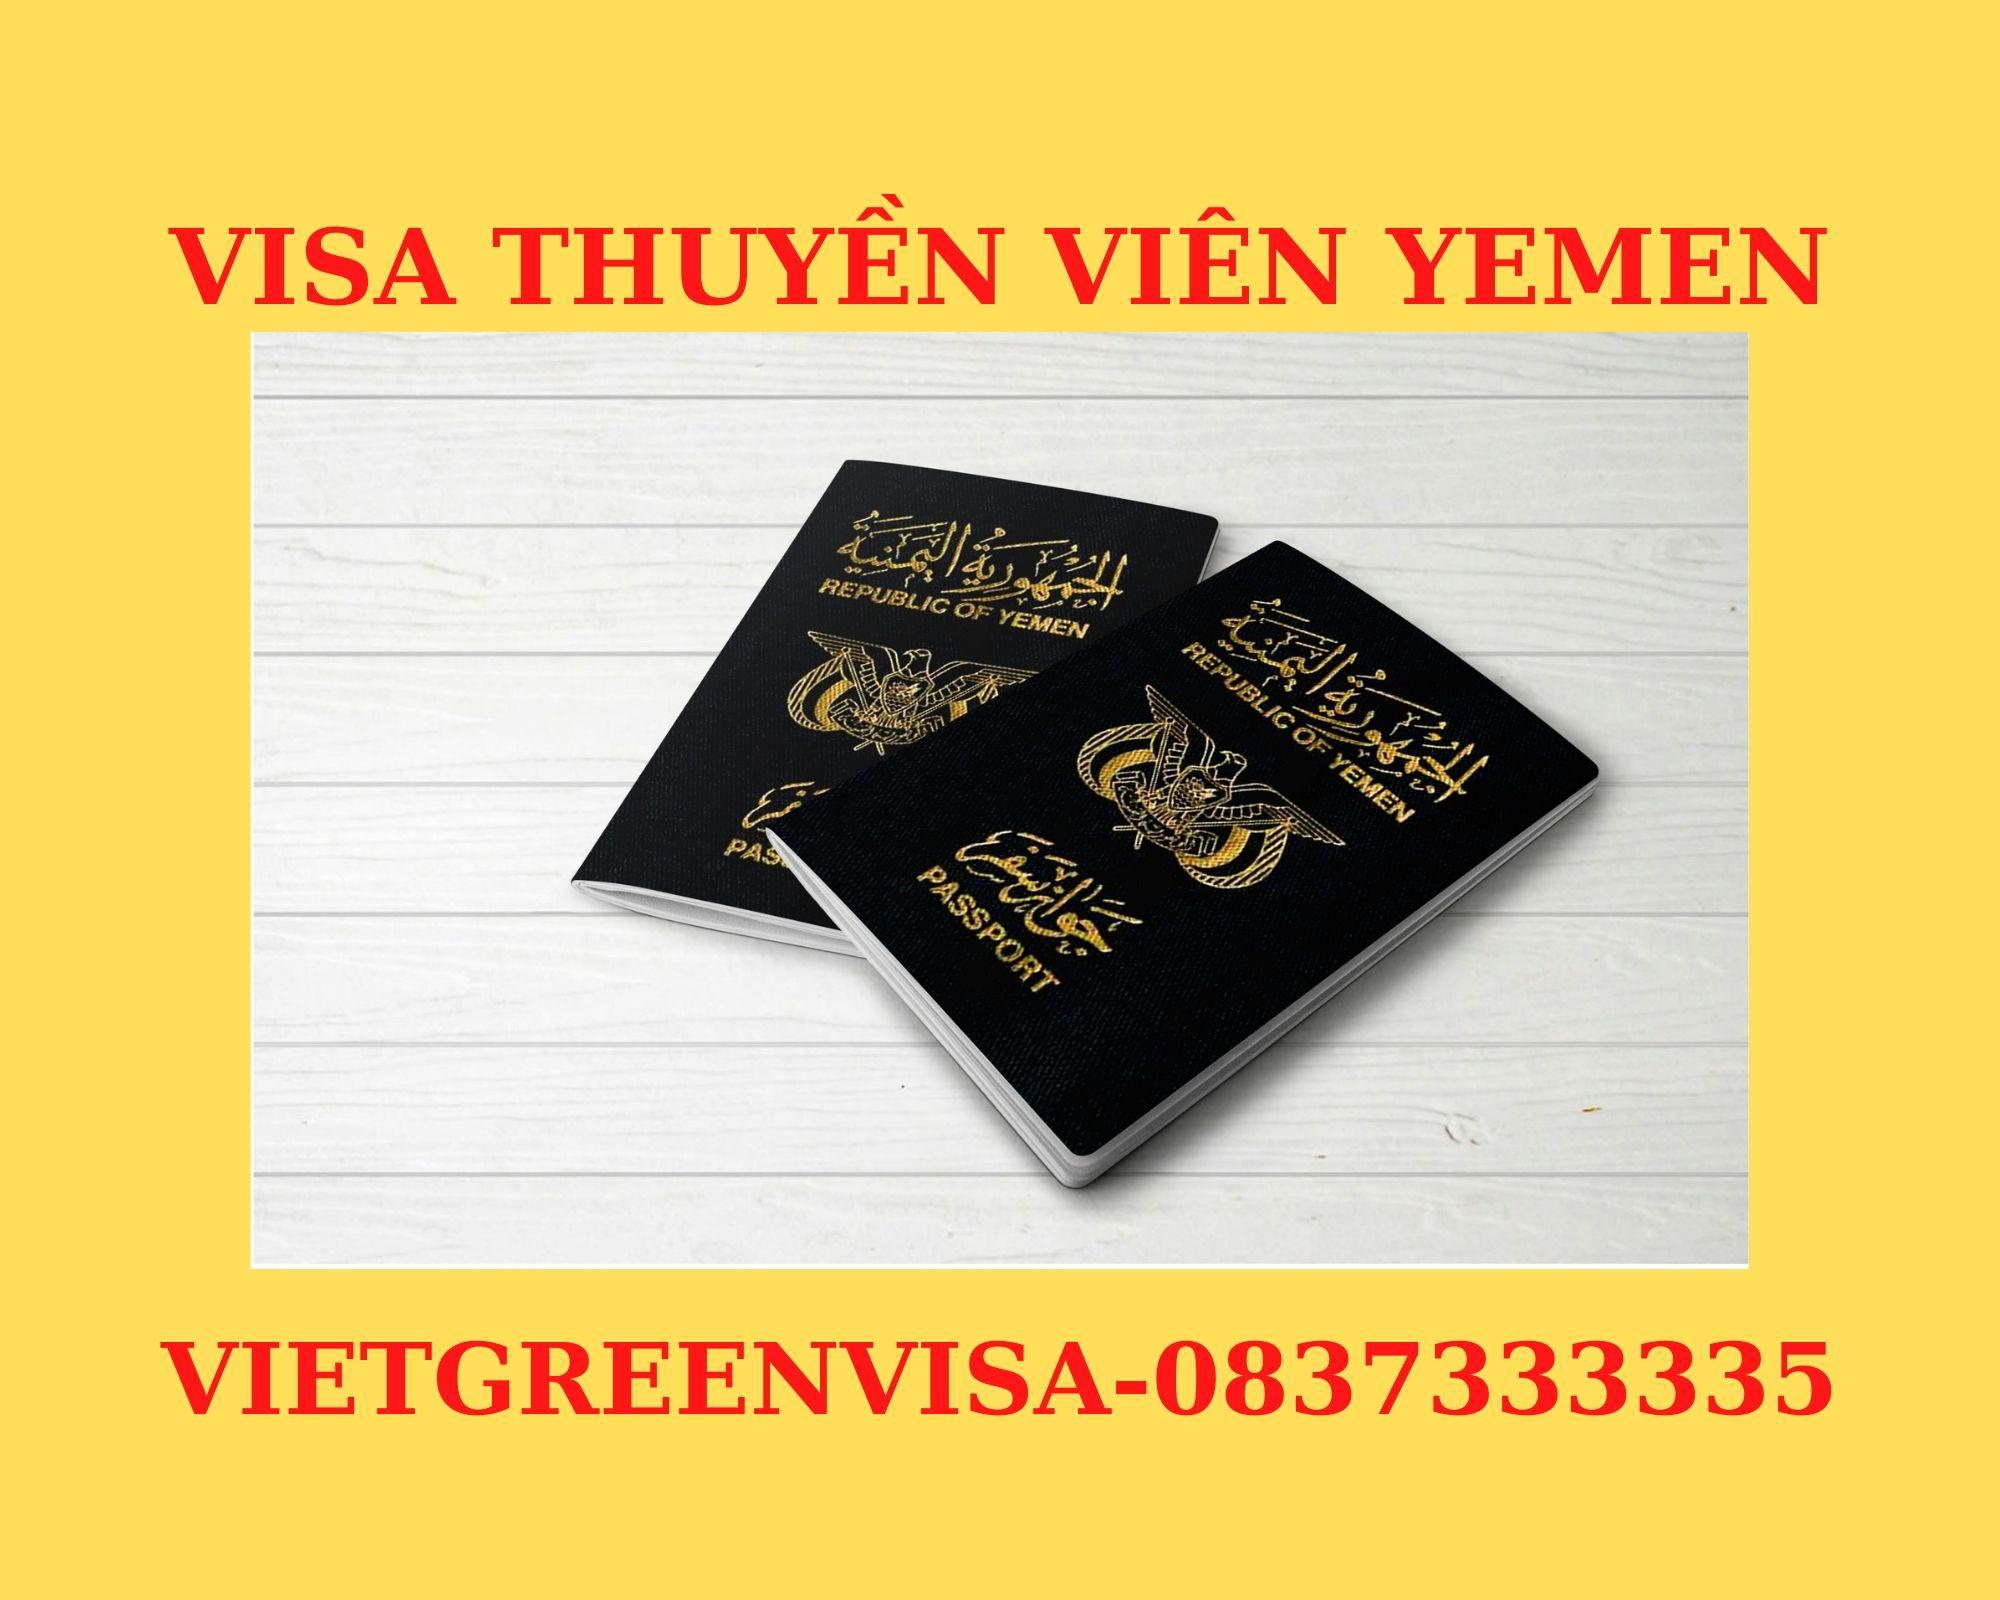 Visa thuyền viên đi Yemen, Visa Yemen diện thuyền viên